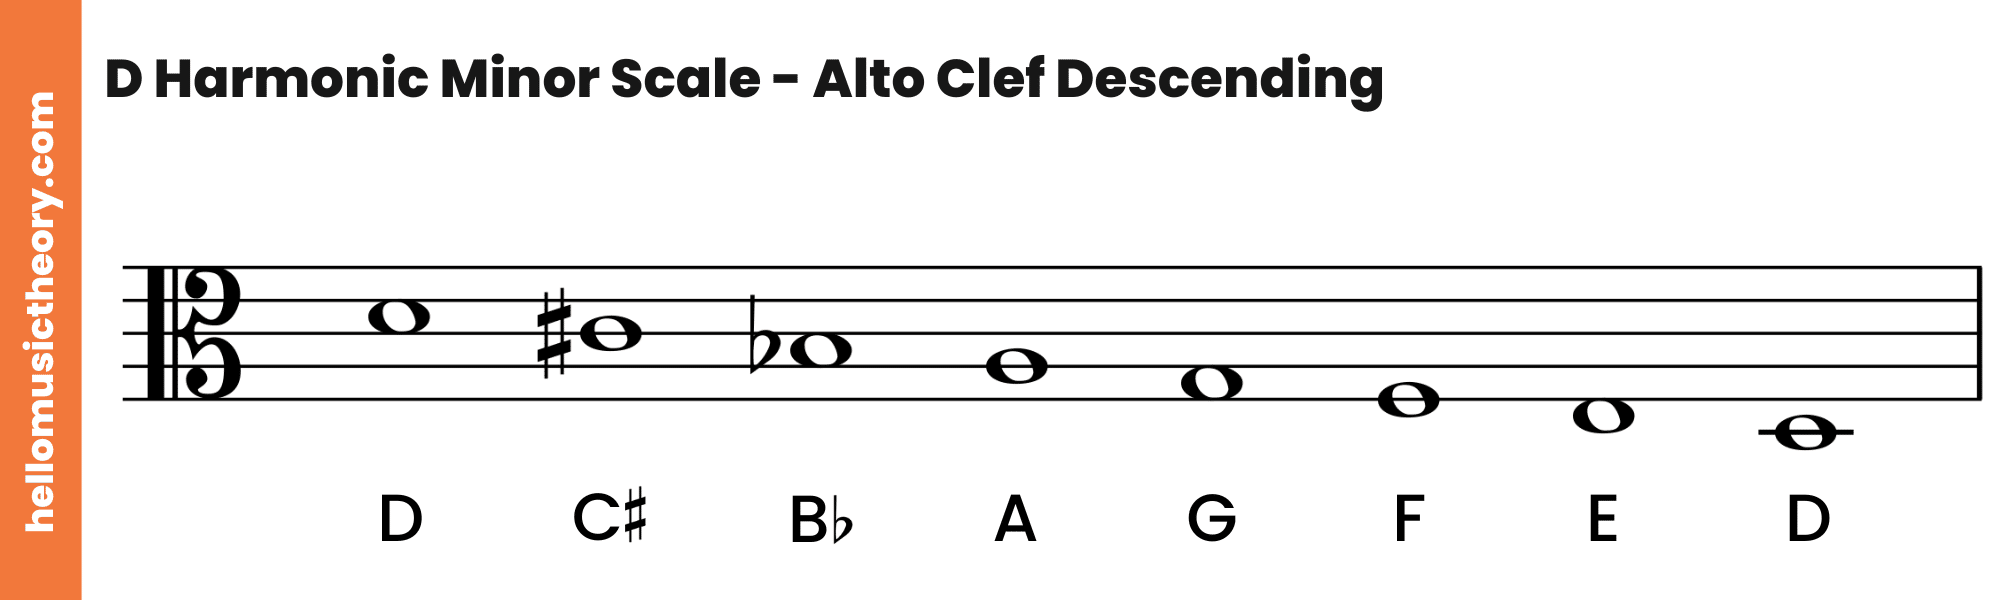 D Harmonic Minor Scale Alto Clef Descending